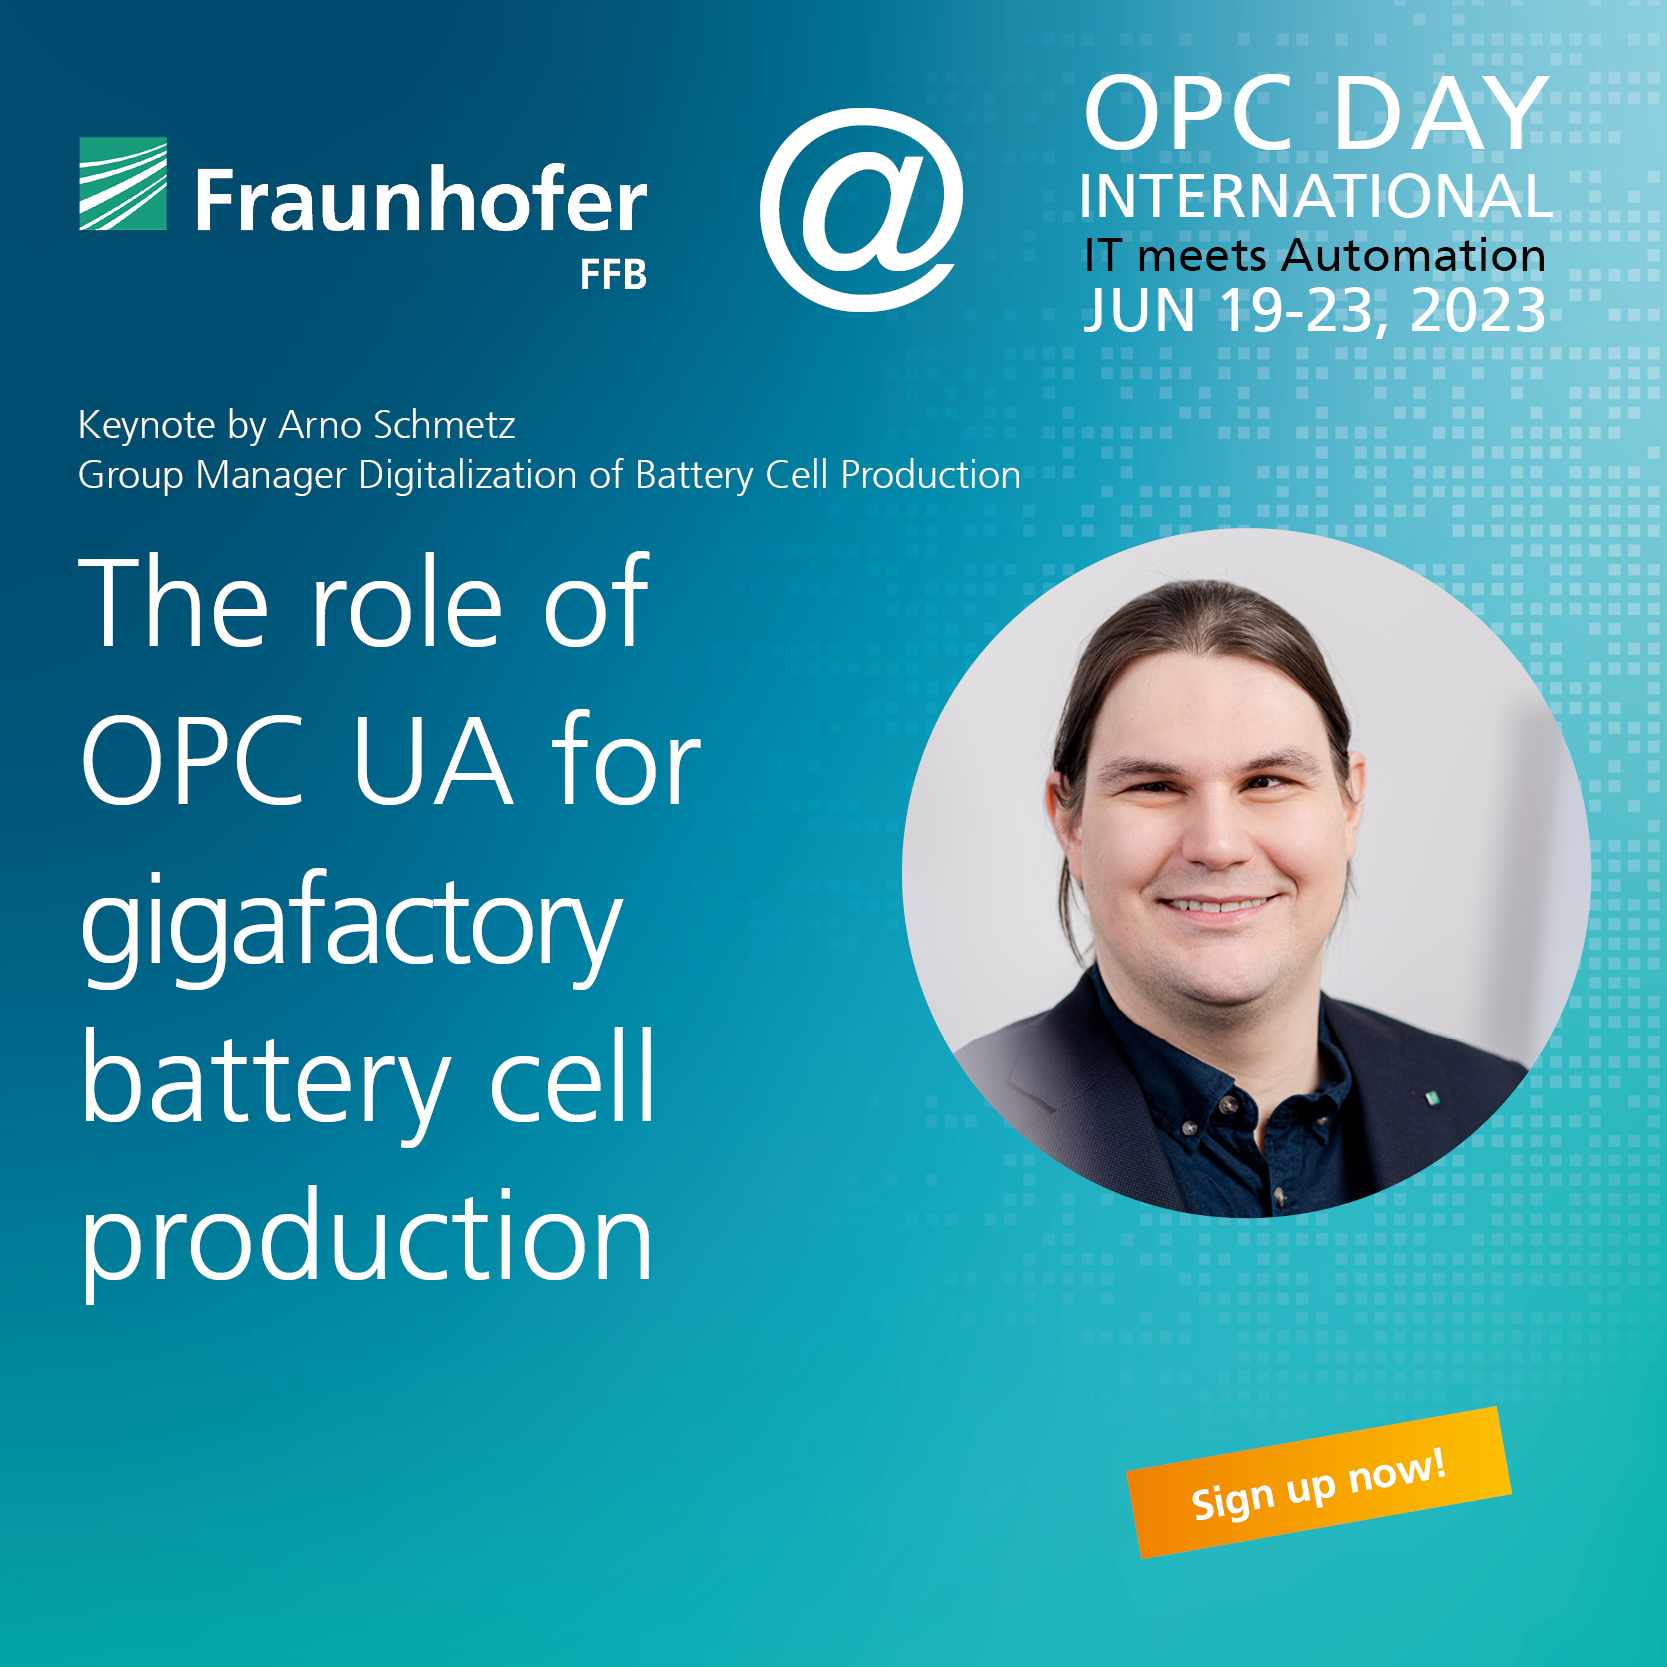 Vortrag von Arno Schmetz über OPC UA in der Batteriezellfertigung